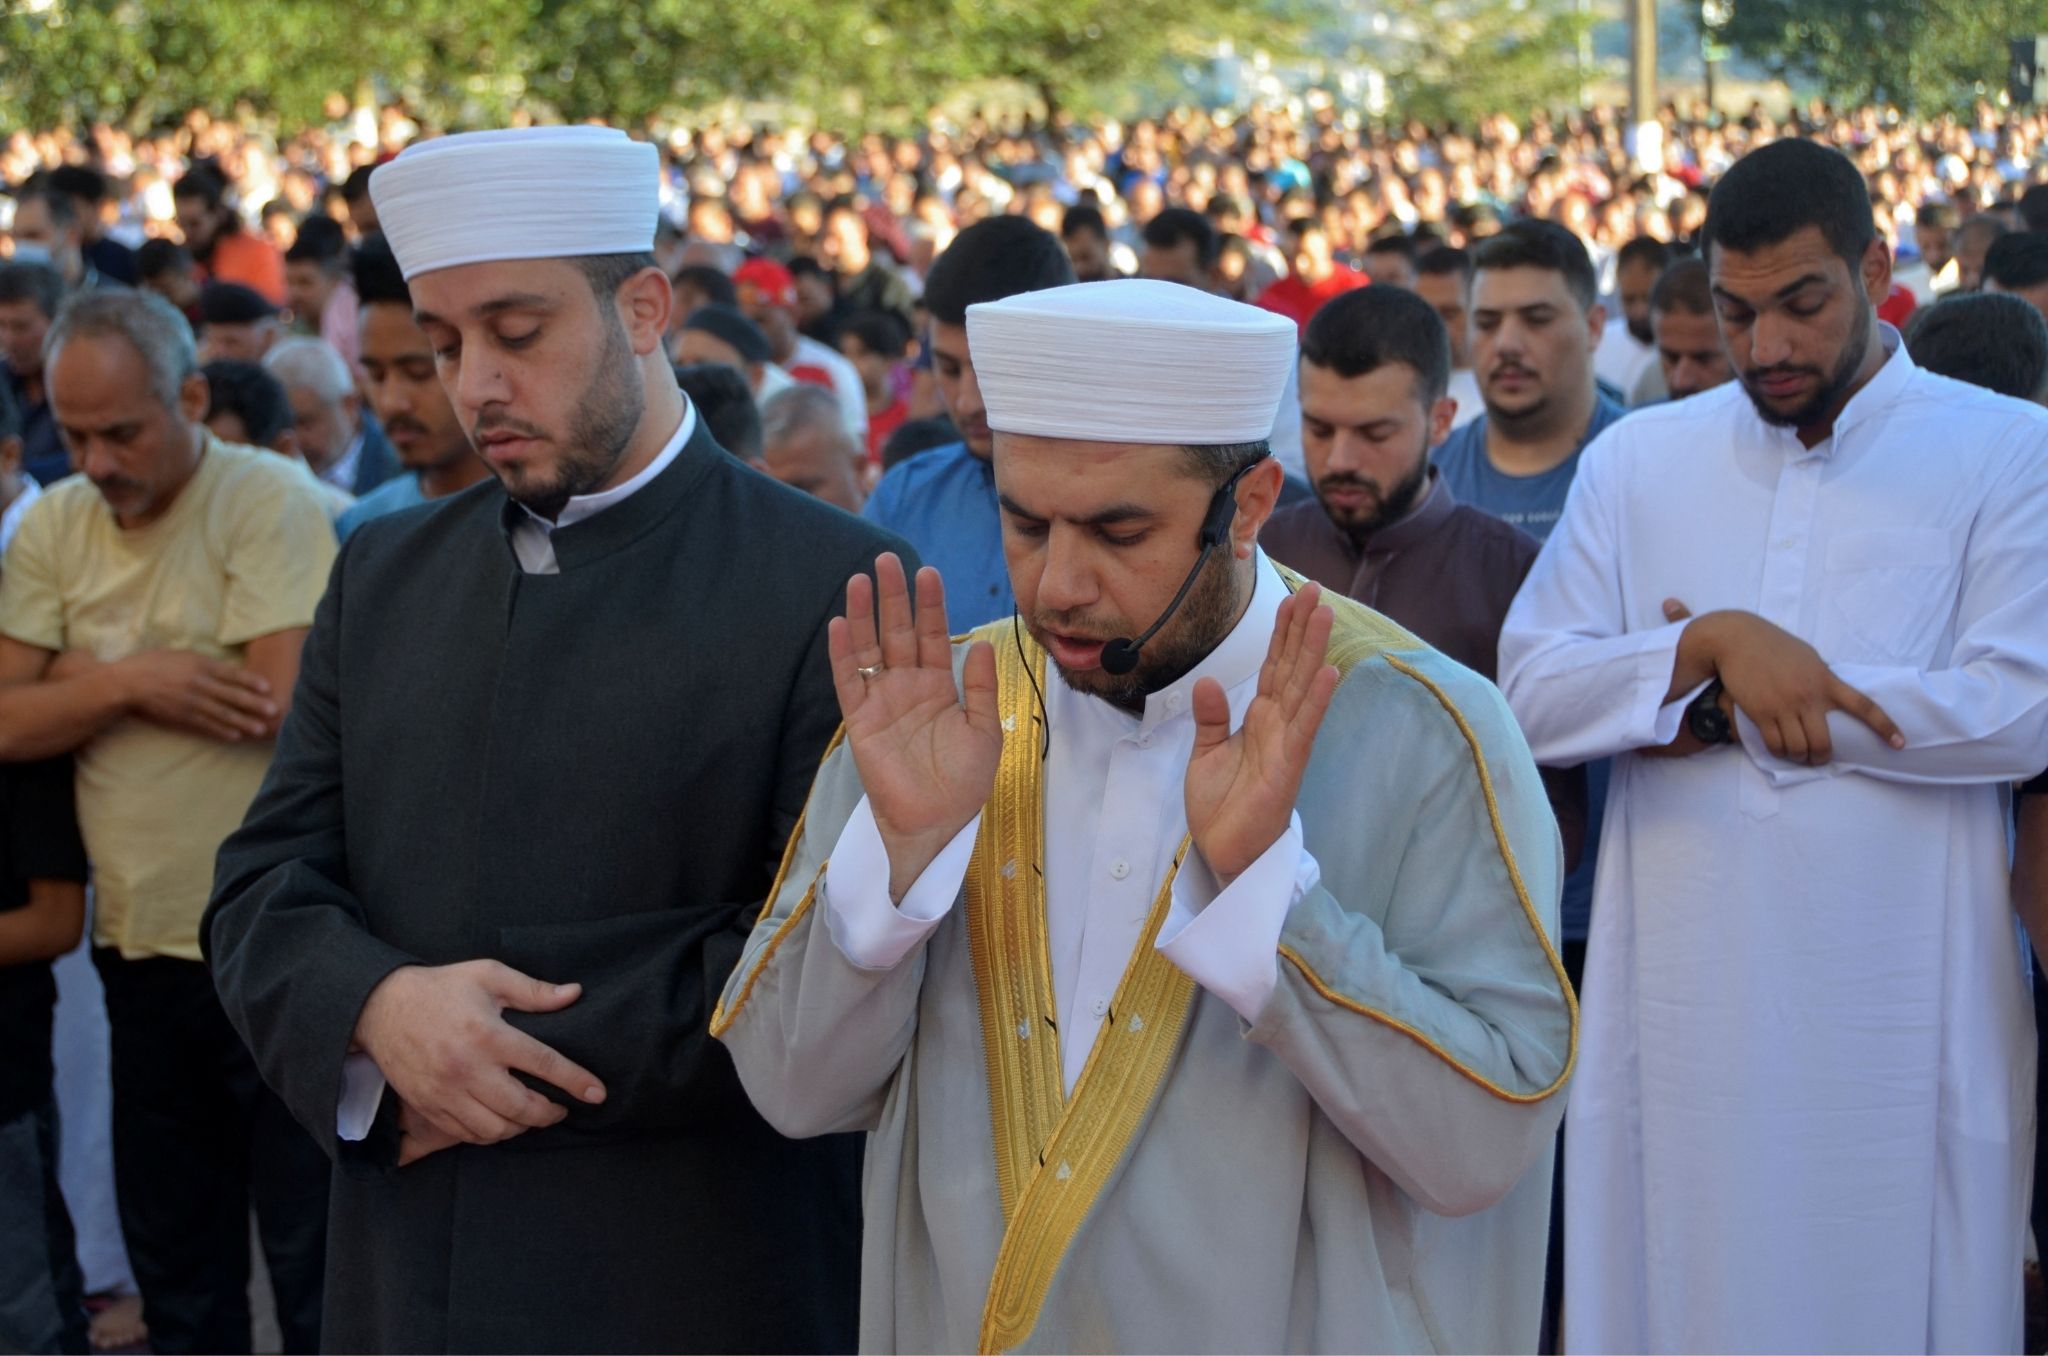 Muslims pray on the first day of Eid al-Adha in Amman, Jordan, July 9, 2022.